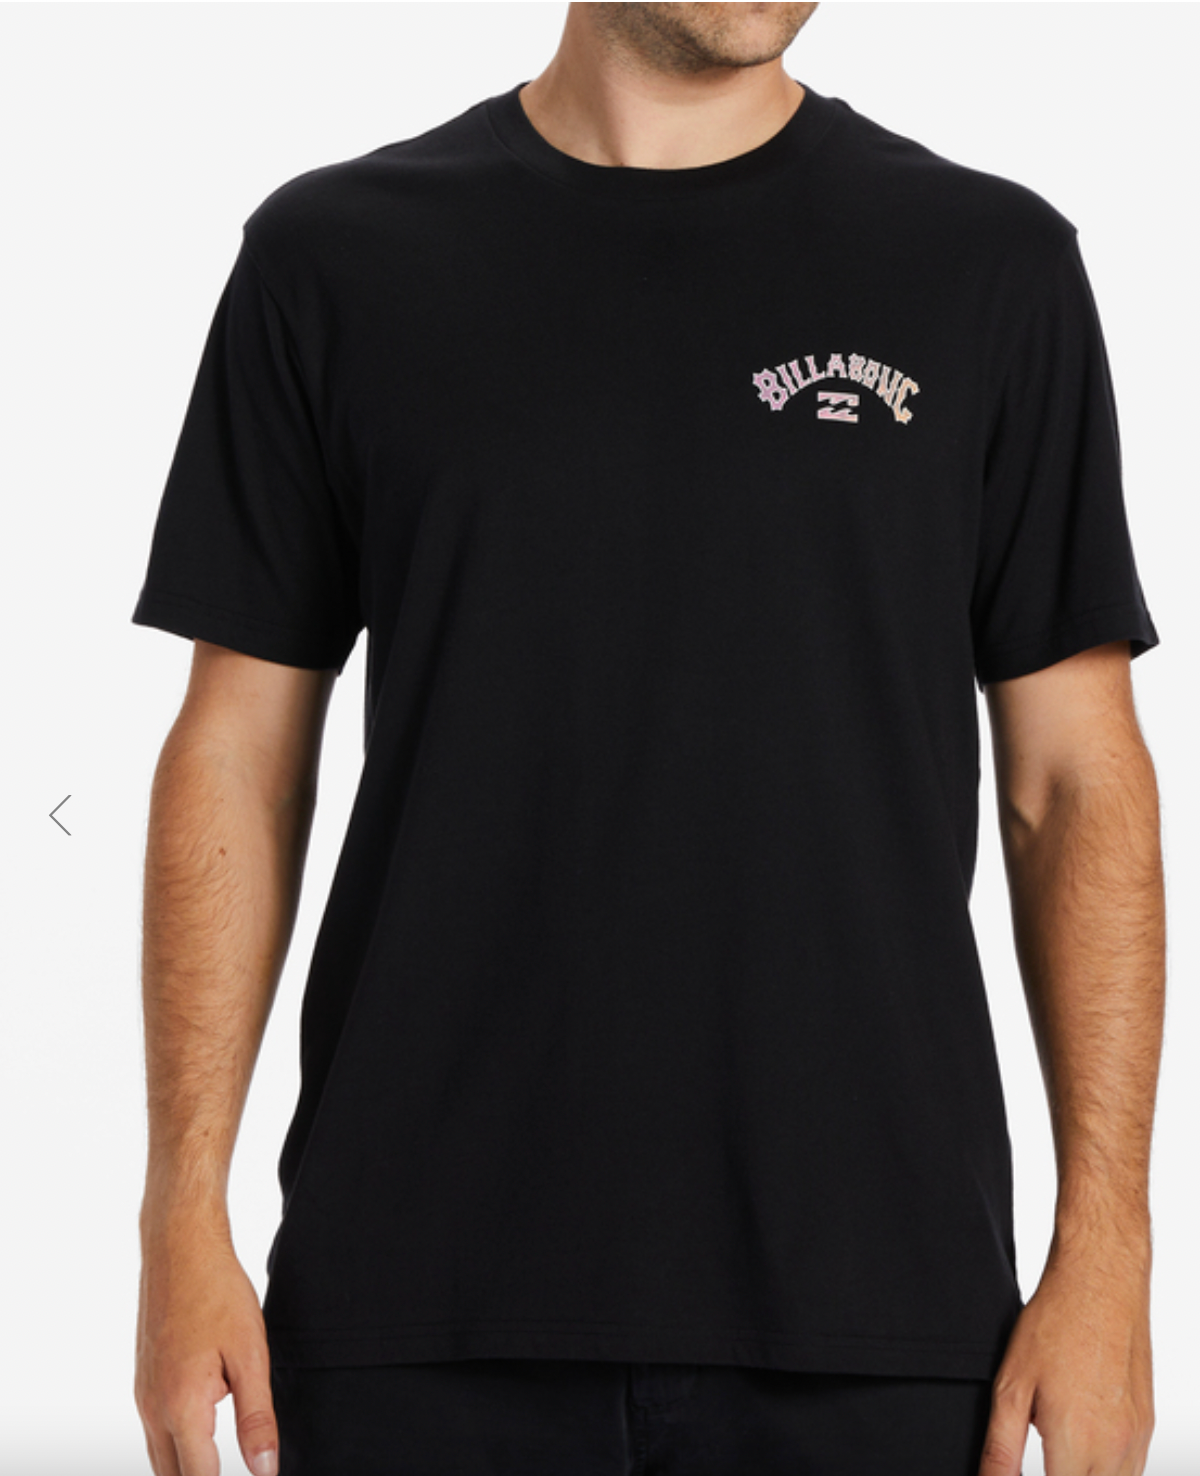 BILLABONG Arch Fill - T-Shirt for Men